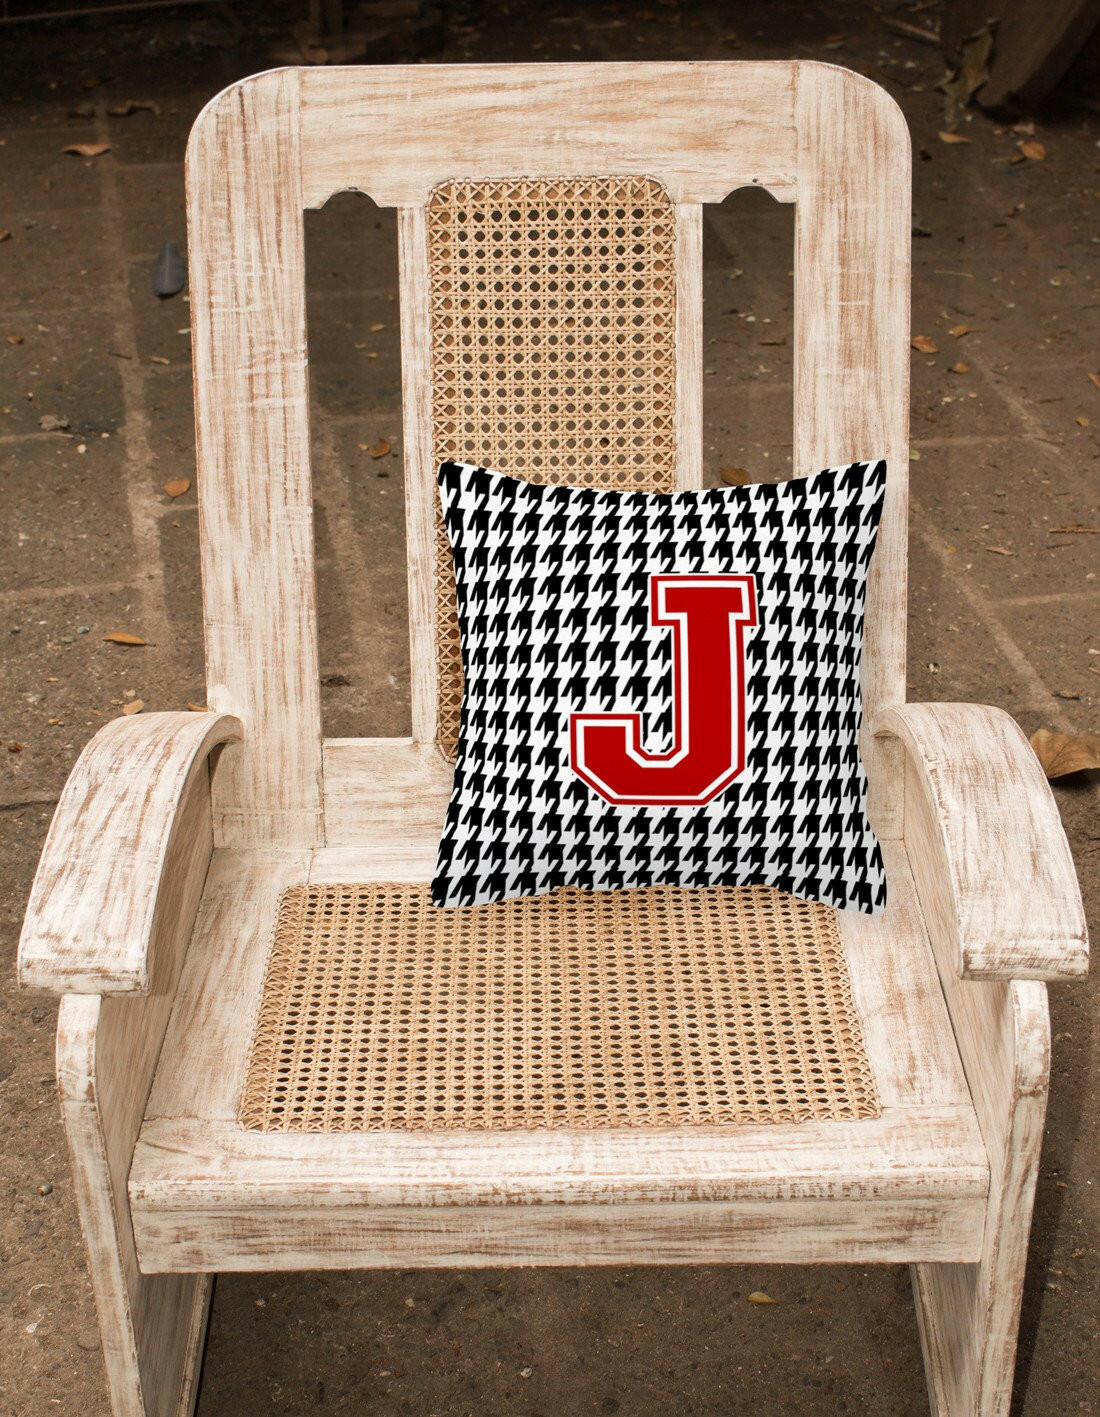 Monogram - Initial J Houndstooth Decorative   Canvas Fabric Pillow CJ1021 - the-store.com